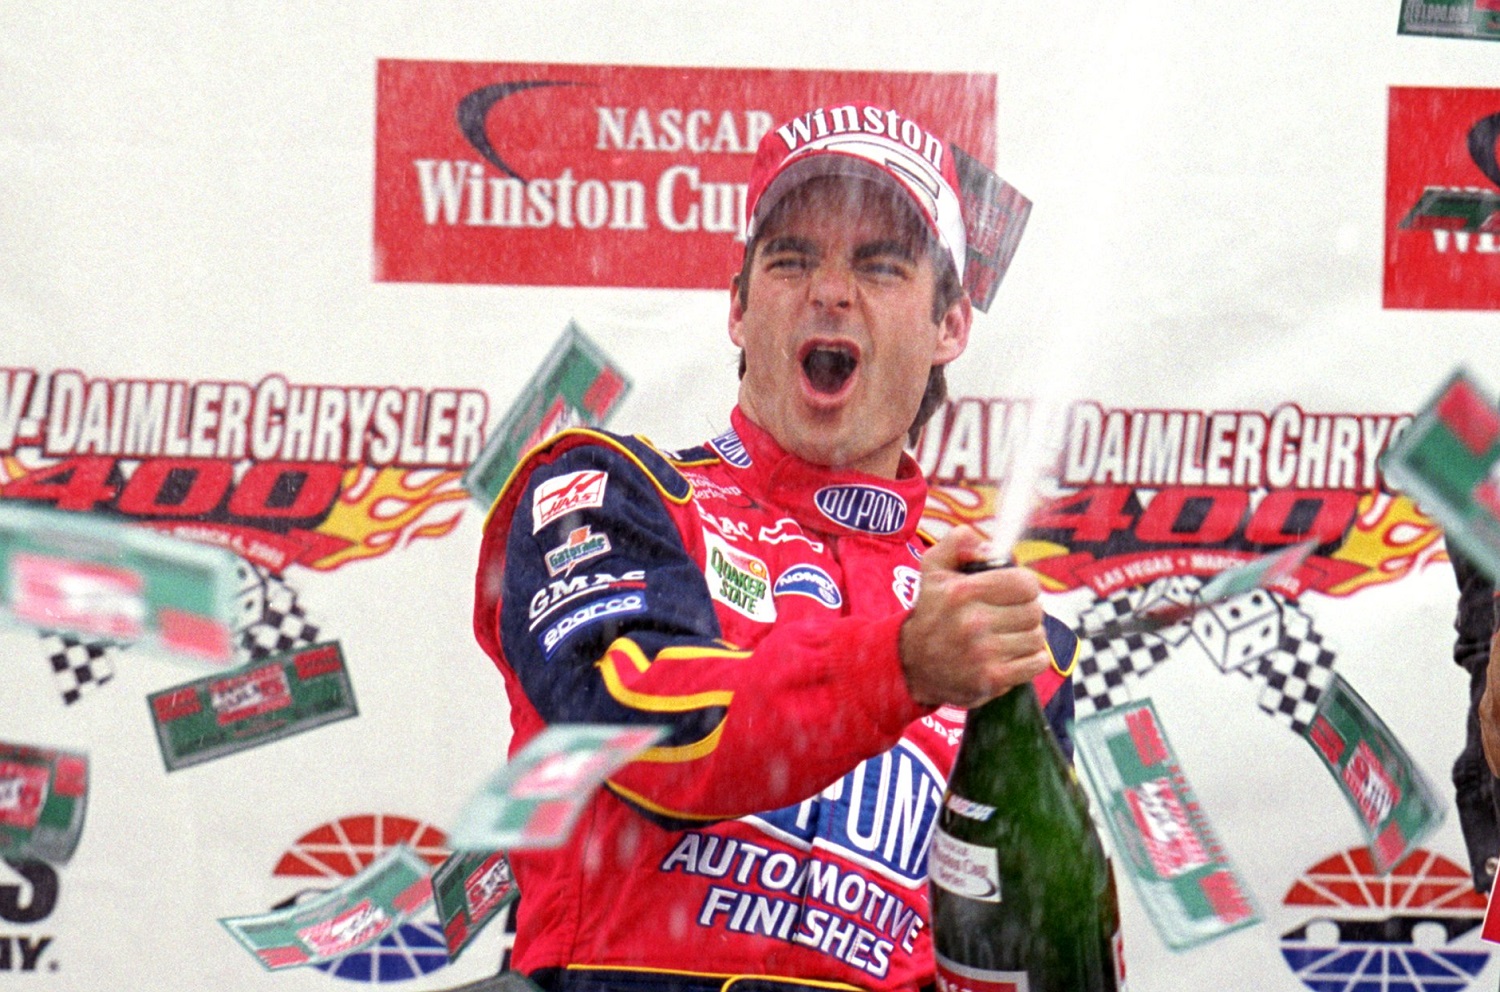 Jeff Gordon of Hendrick Motorsports celebrates his win after the UAW Diamler-Chrysler 400 at Las Vegas Motor Speedway in 2001.